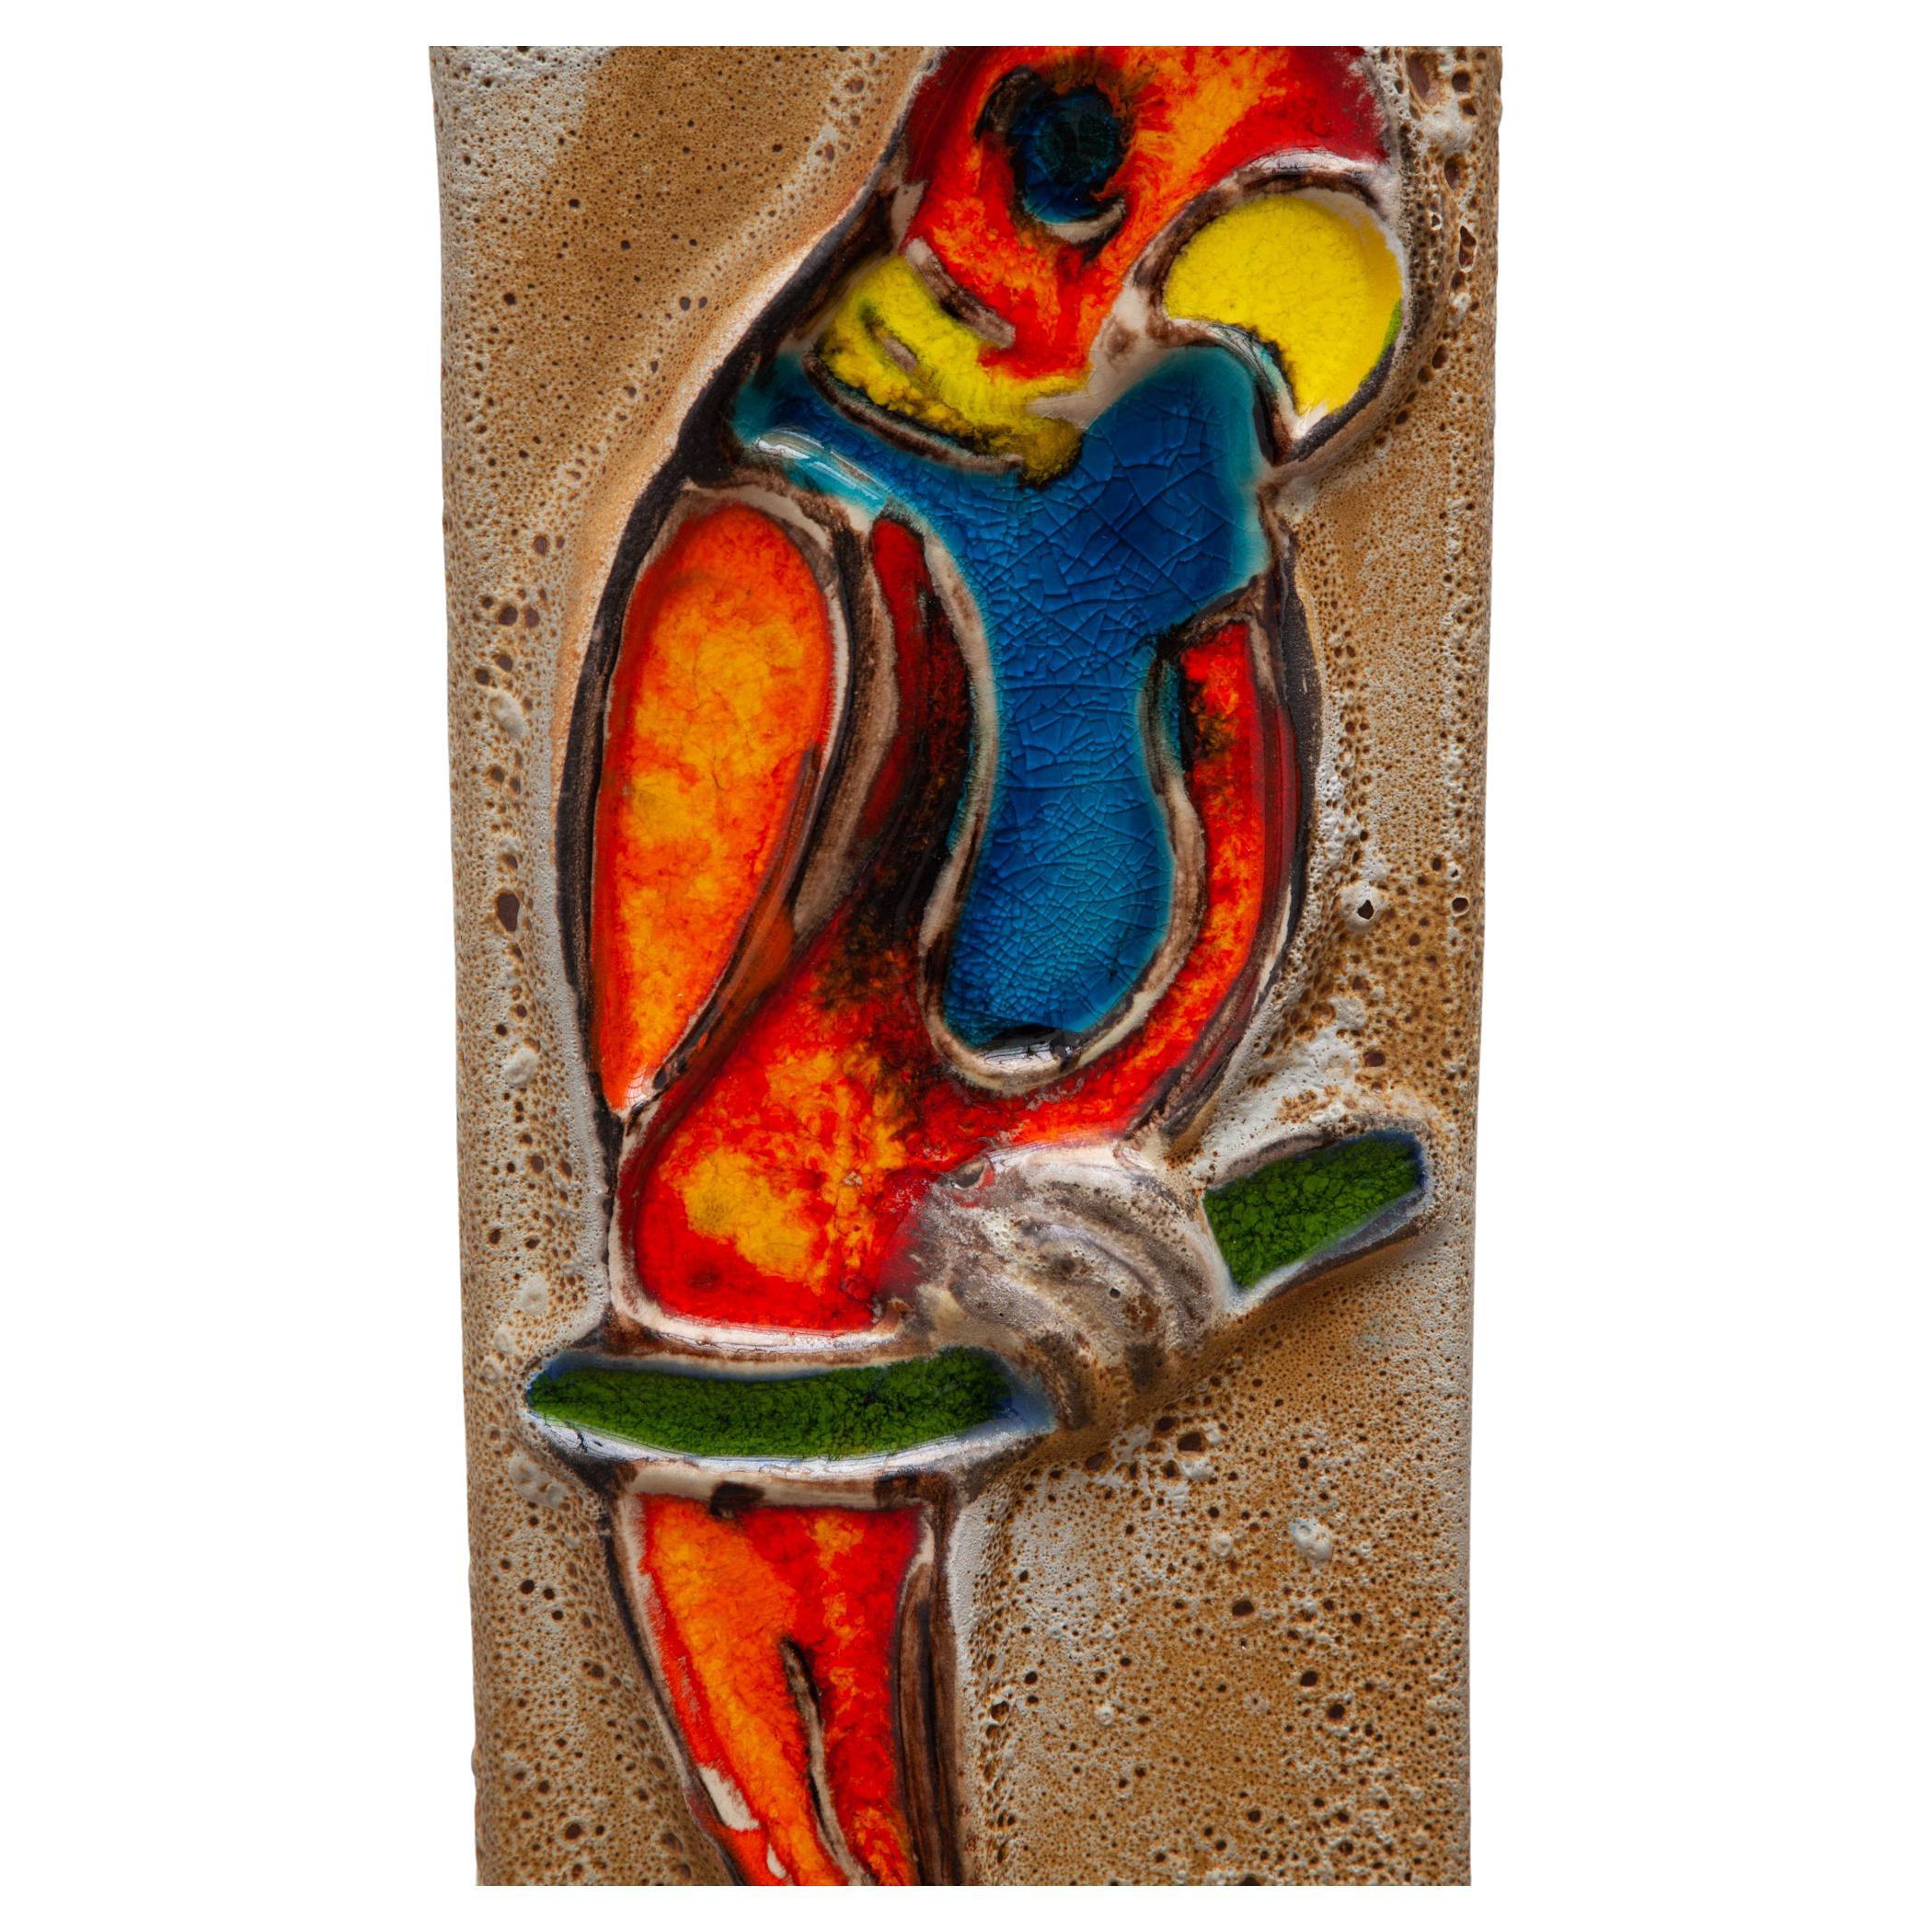 Vieux carreau de céramique émaillée à suspendre. Motif en relief d'un perroquet dans des émaux colorés et très brillants. Suspendu à une chaîne en fer. Dimensions : 20W x 47H x 2D Chaîne : 28cm.